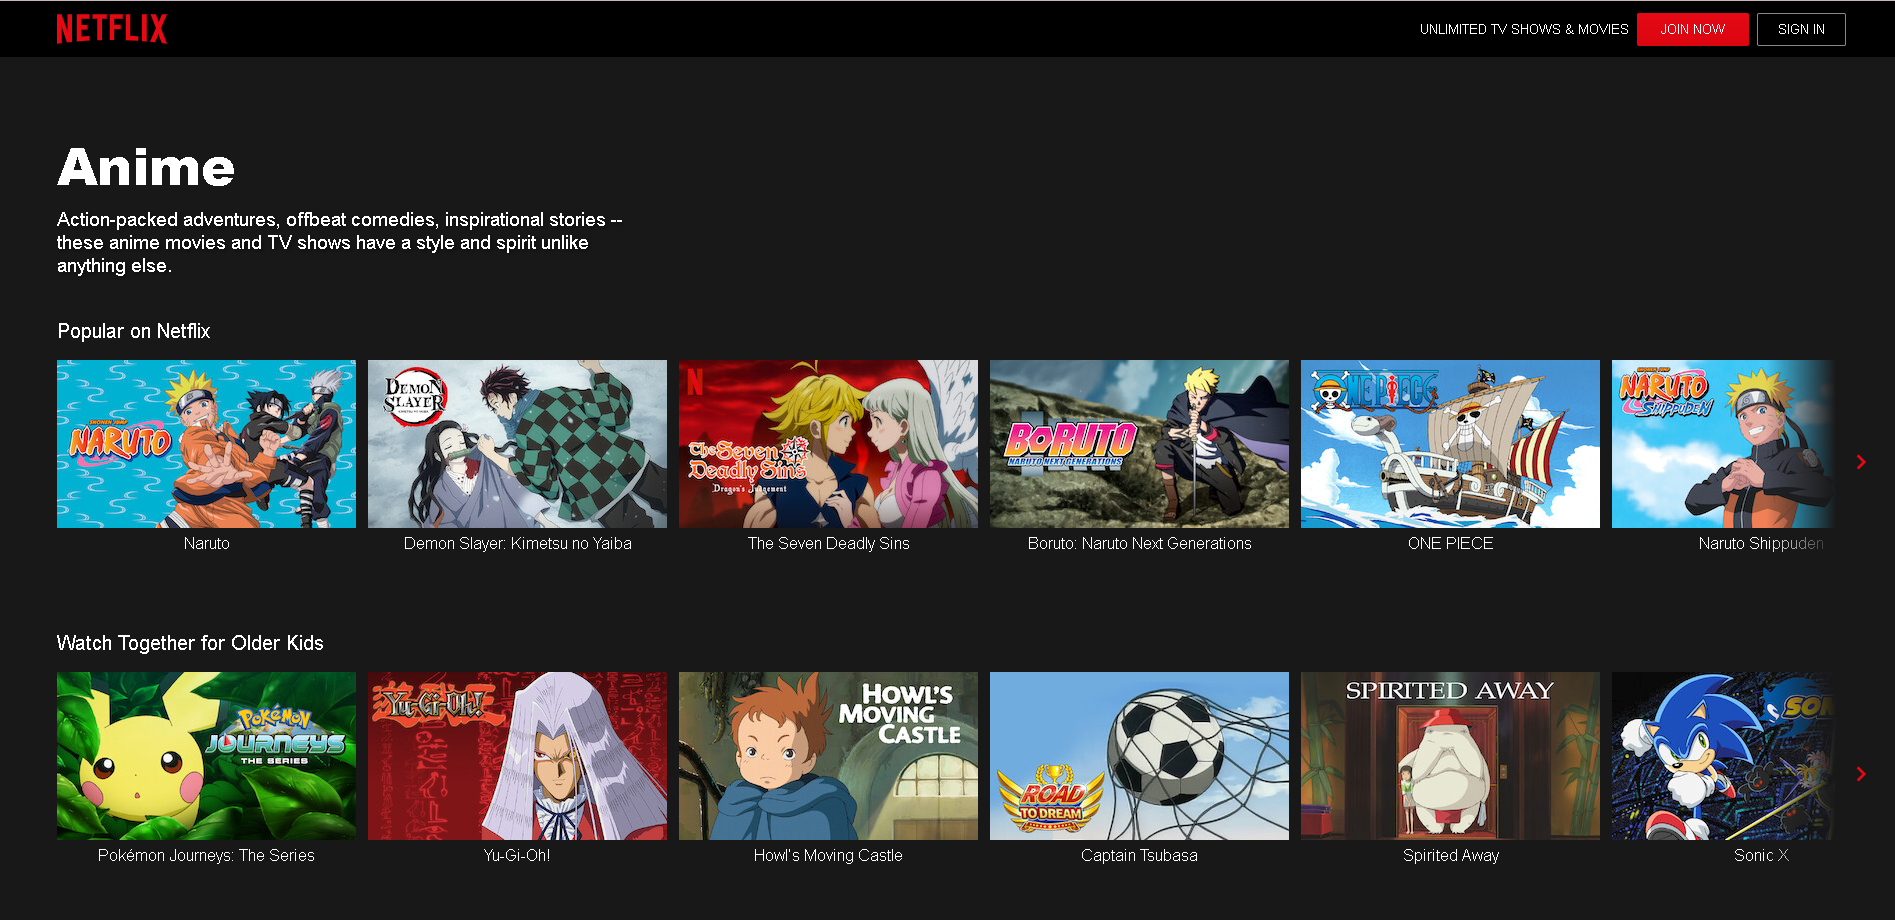 Códigos de Netflix para desbloquear todo el contenido de anime